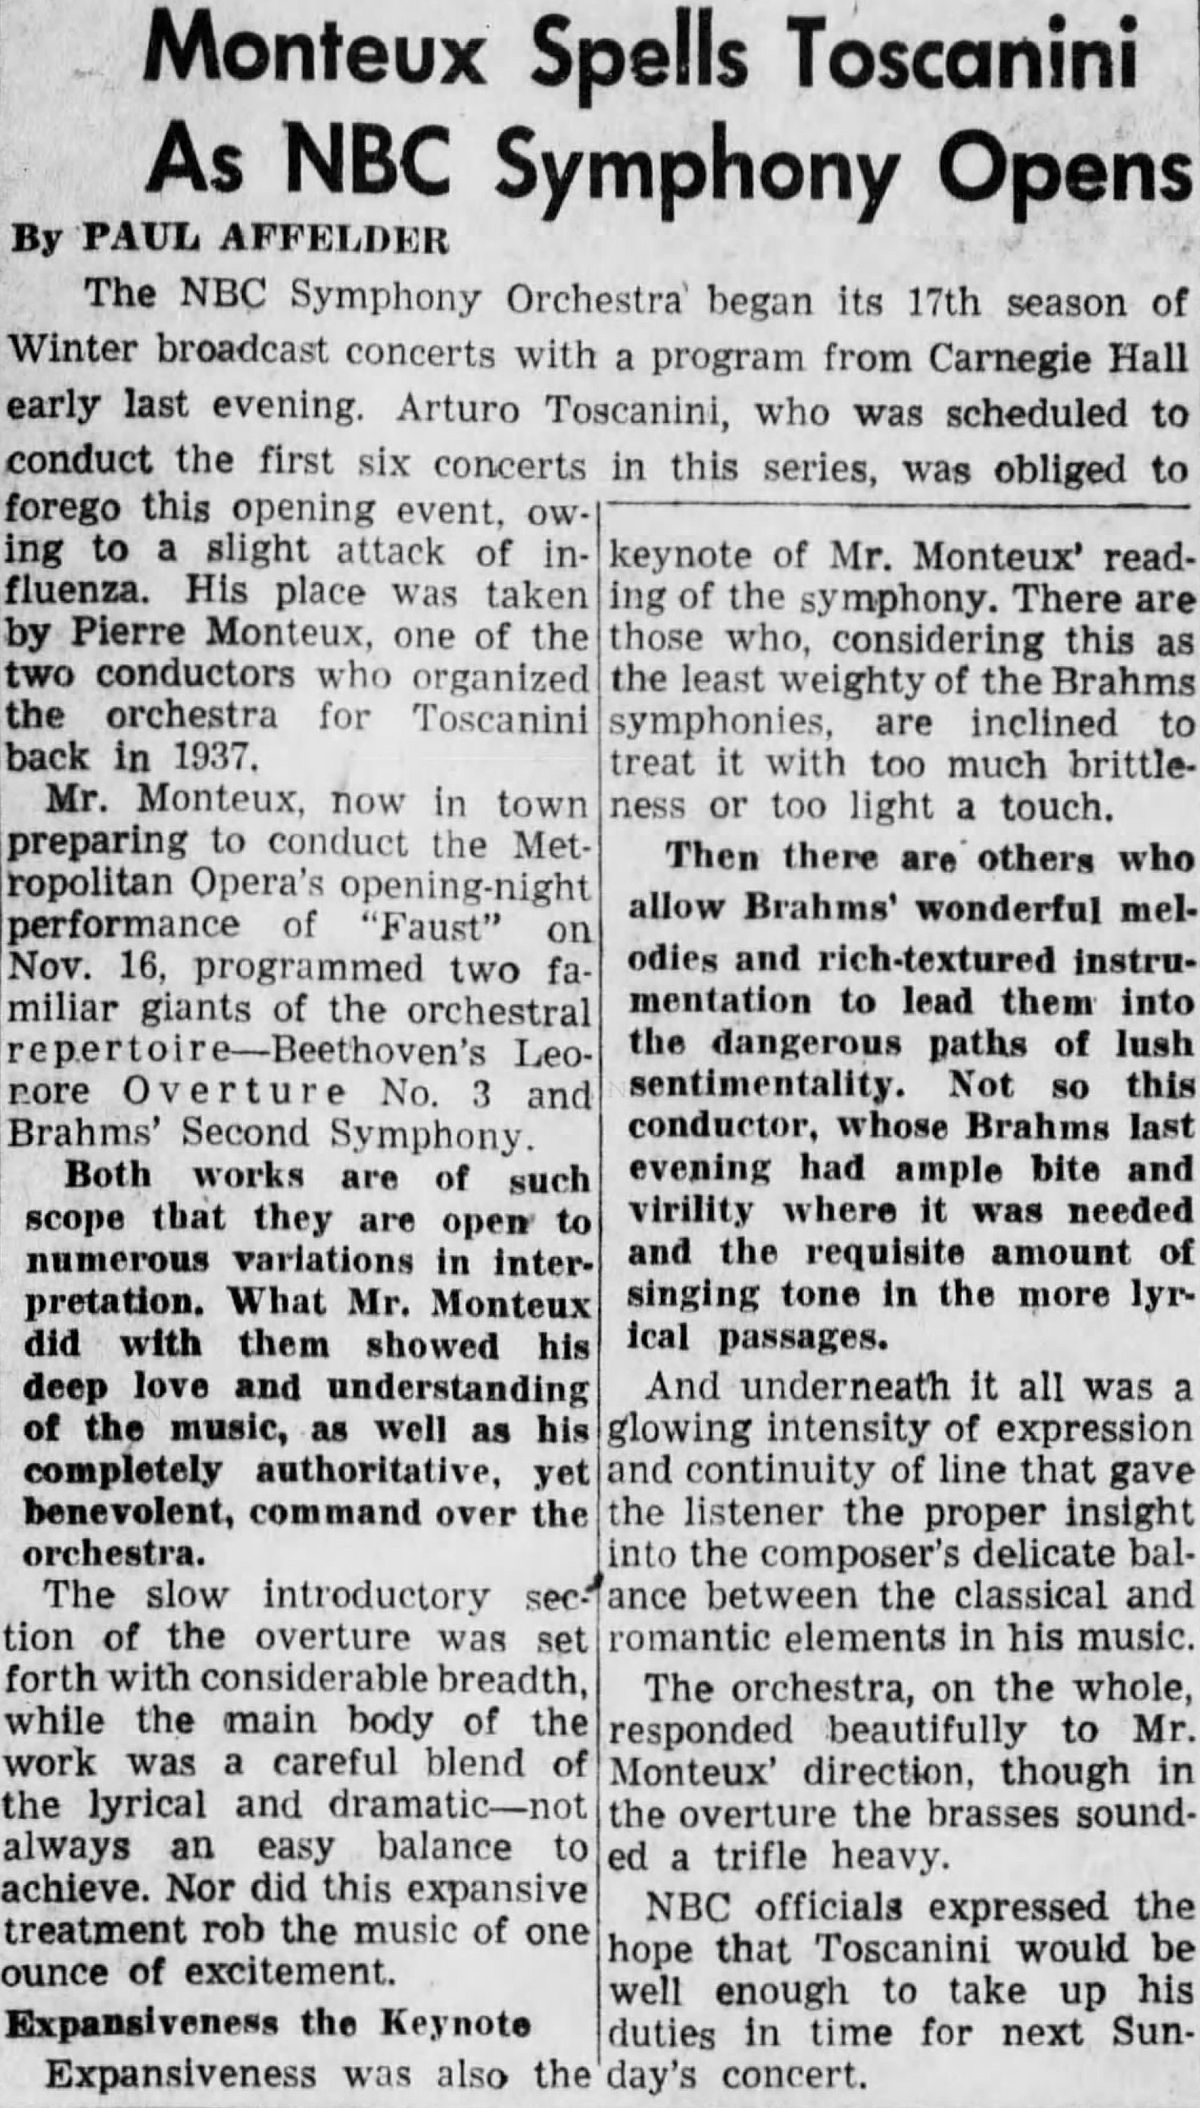 Compte-rendu paru dans le journal The Brooklyn Daily Eagle, Mon Nov 9 1953 Page 7, cliquer pour une vue agrandie